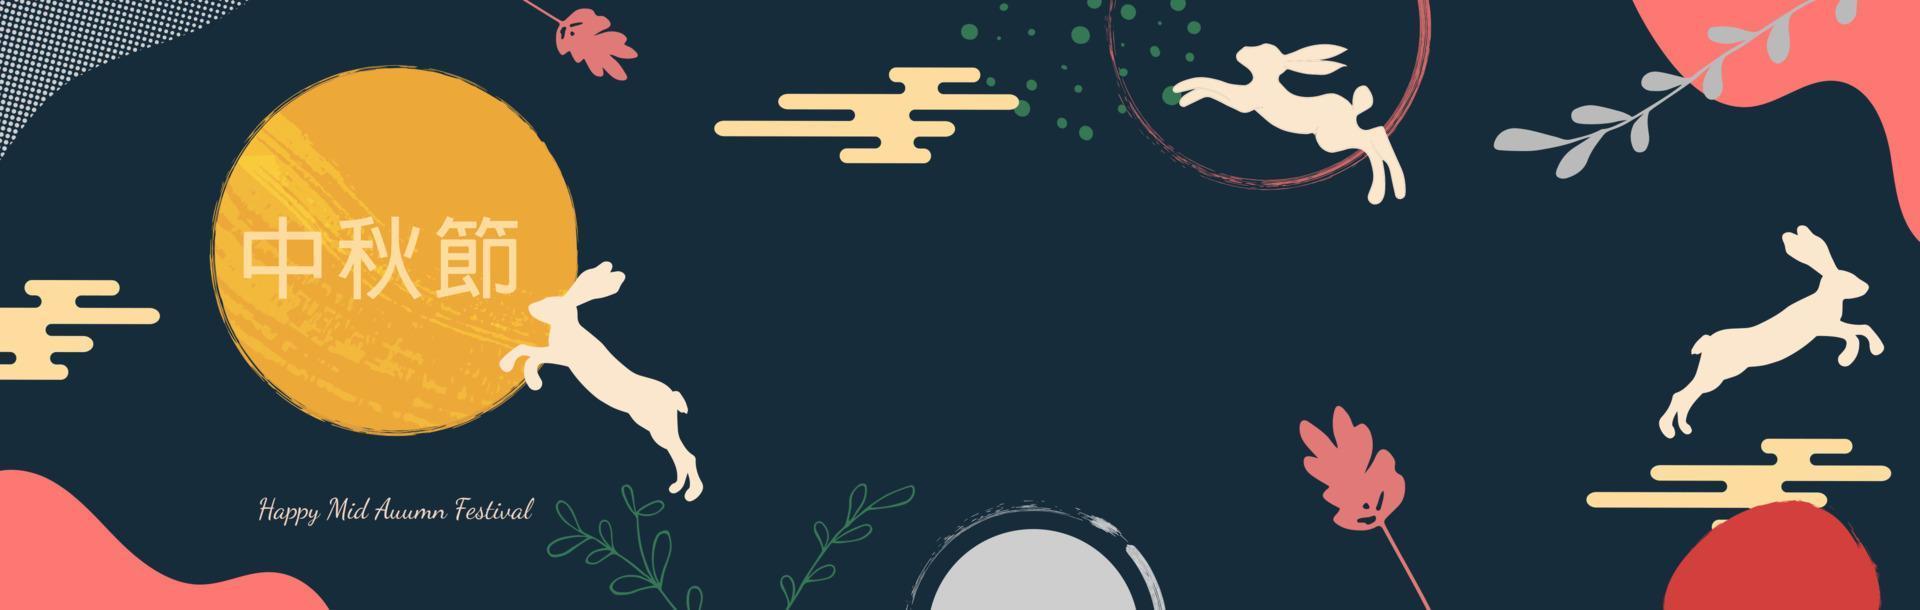 midhöstfestivalen trendig design med målad måne, månkaka, söta kaniner, växter och prickar, färgstänk på mörkblå bakgrund. översättning från kinesisk-mid-höstfestivalen. vektor